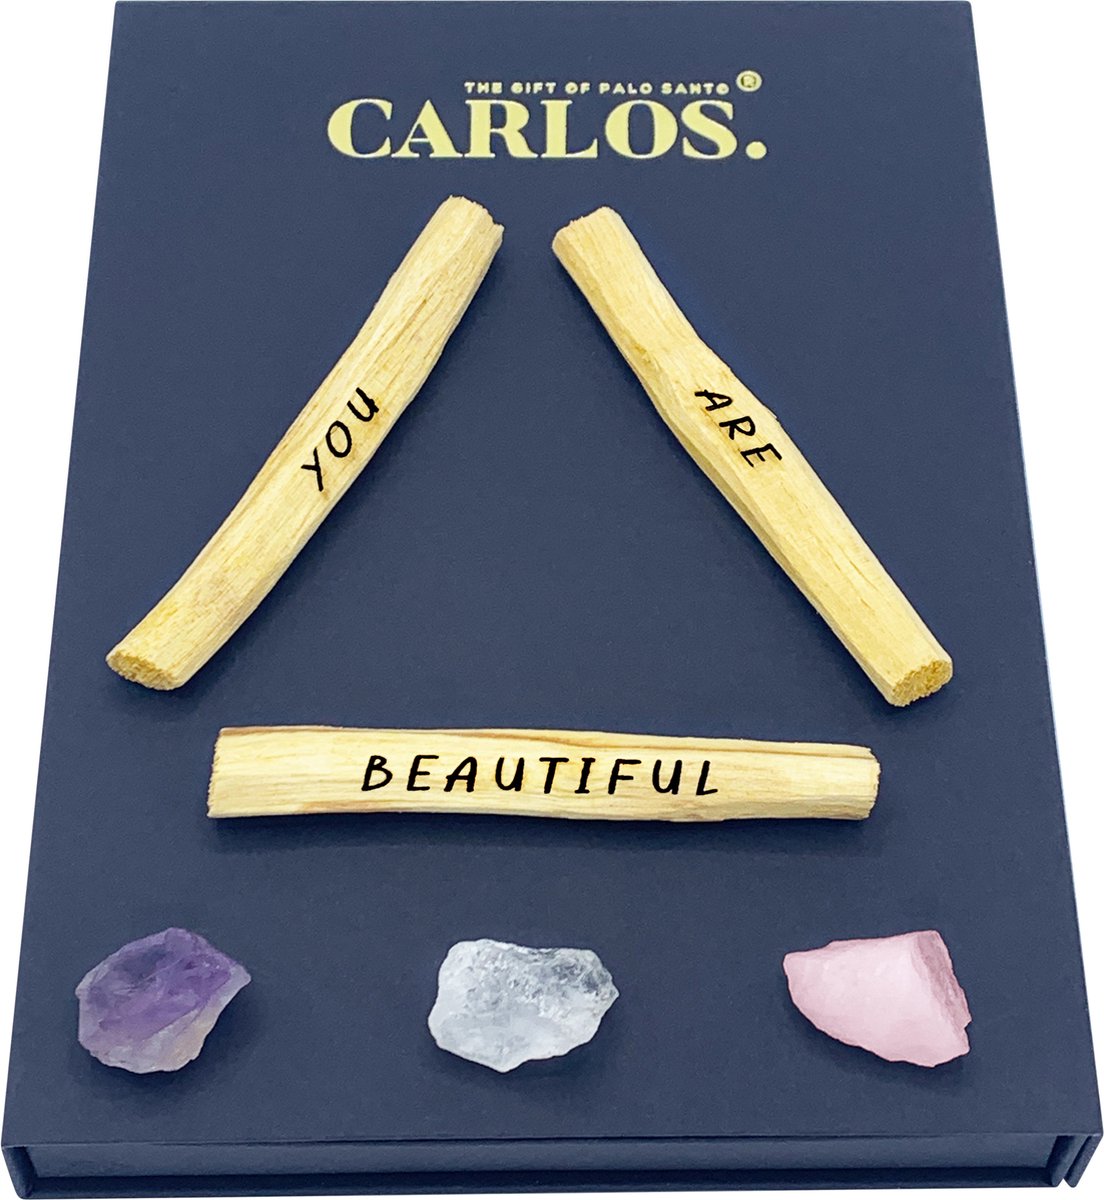 Luxe giftset PALO SANTO met gegraveerde boodschap YOU ARE BEAUTIFUL + 3 edelstenen: amethist, bergkristal, rozenkwarts.